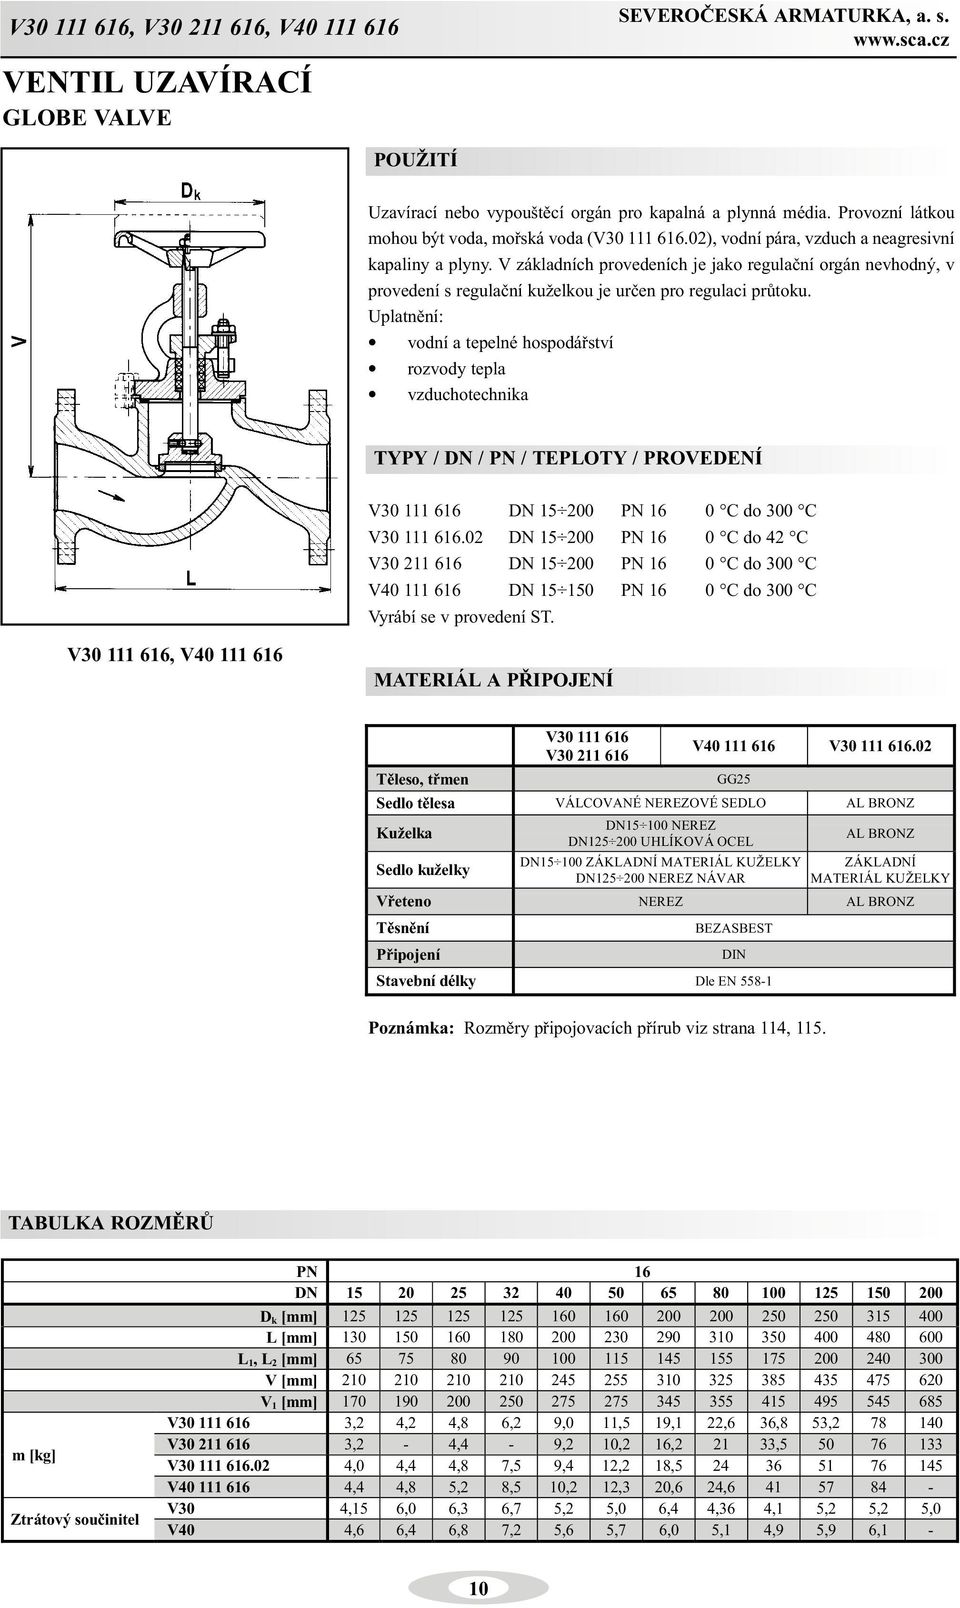 Uplatnìní: vodní a tepelné hospodáøství rozvody tepla vzduchotechnika V30 111 616 DN 15 200 PN 16 0 C do 300 C V30 111 616.